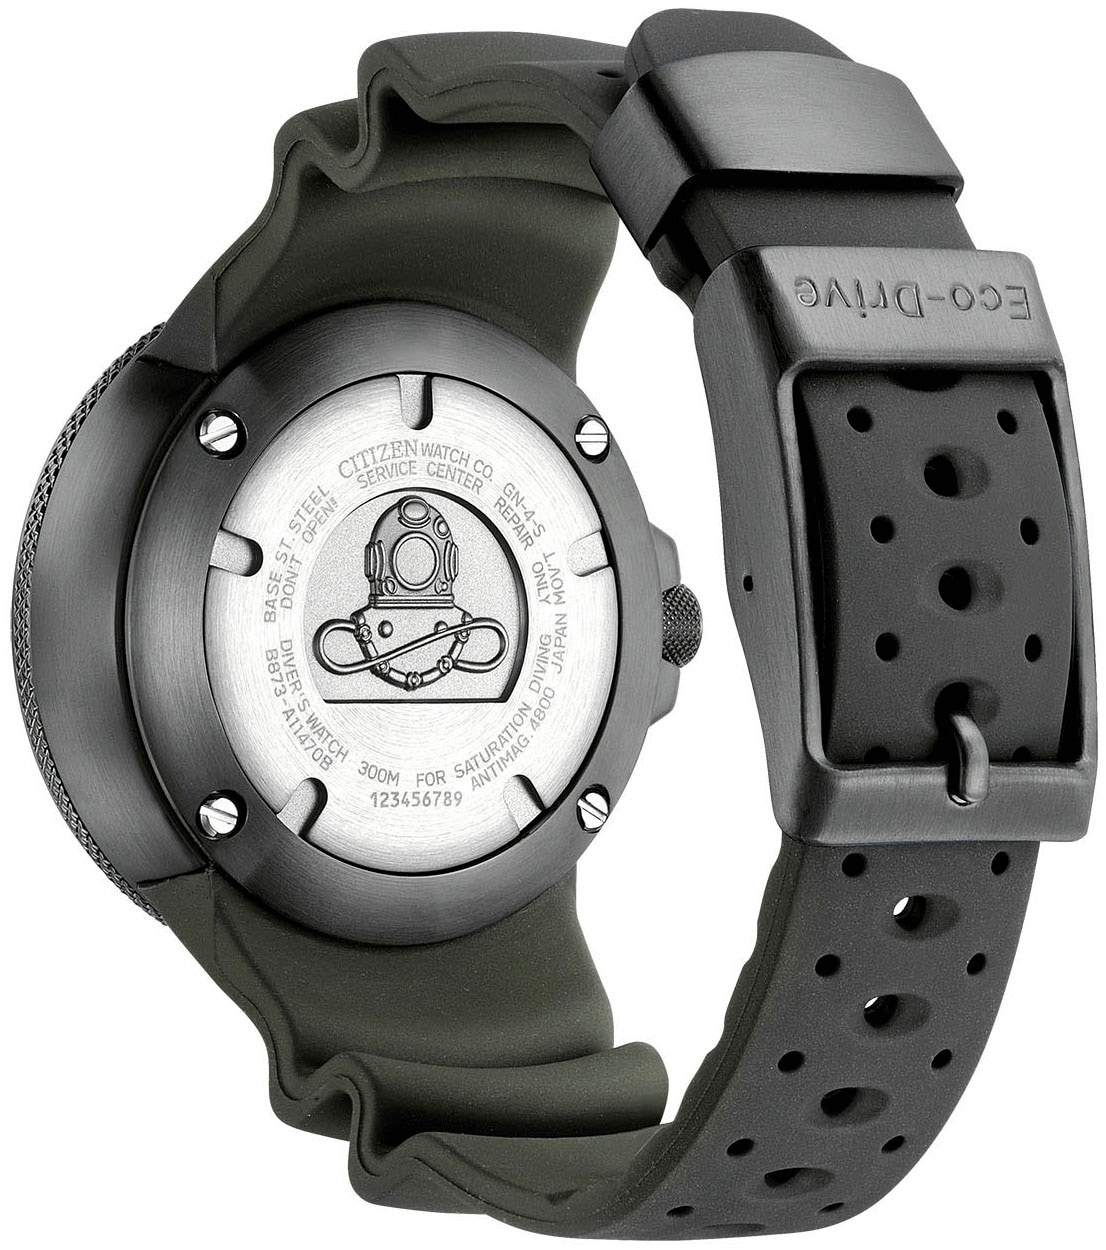 Citizen Taucheruhr »Promaster Professional Diver 300«, Armbanduhr, Herrenuhr, Solar